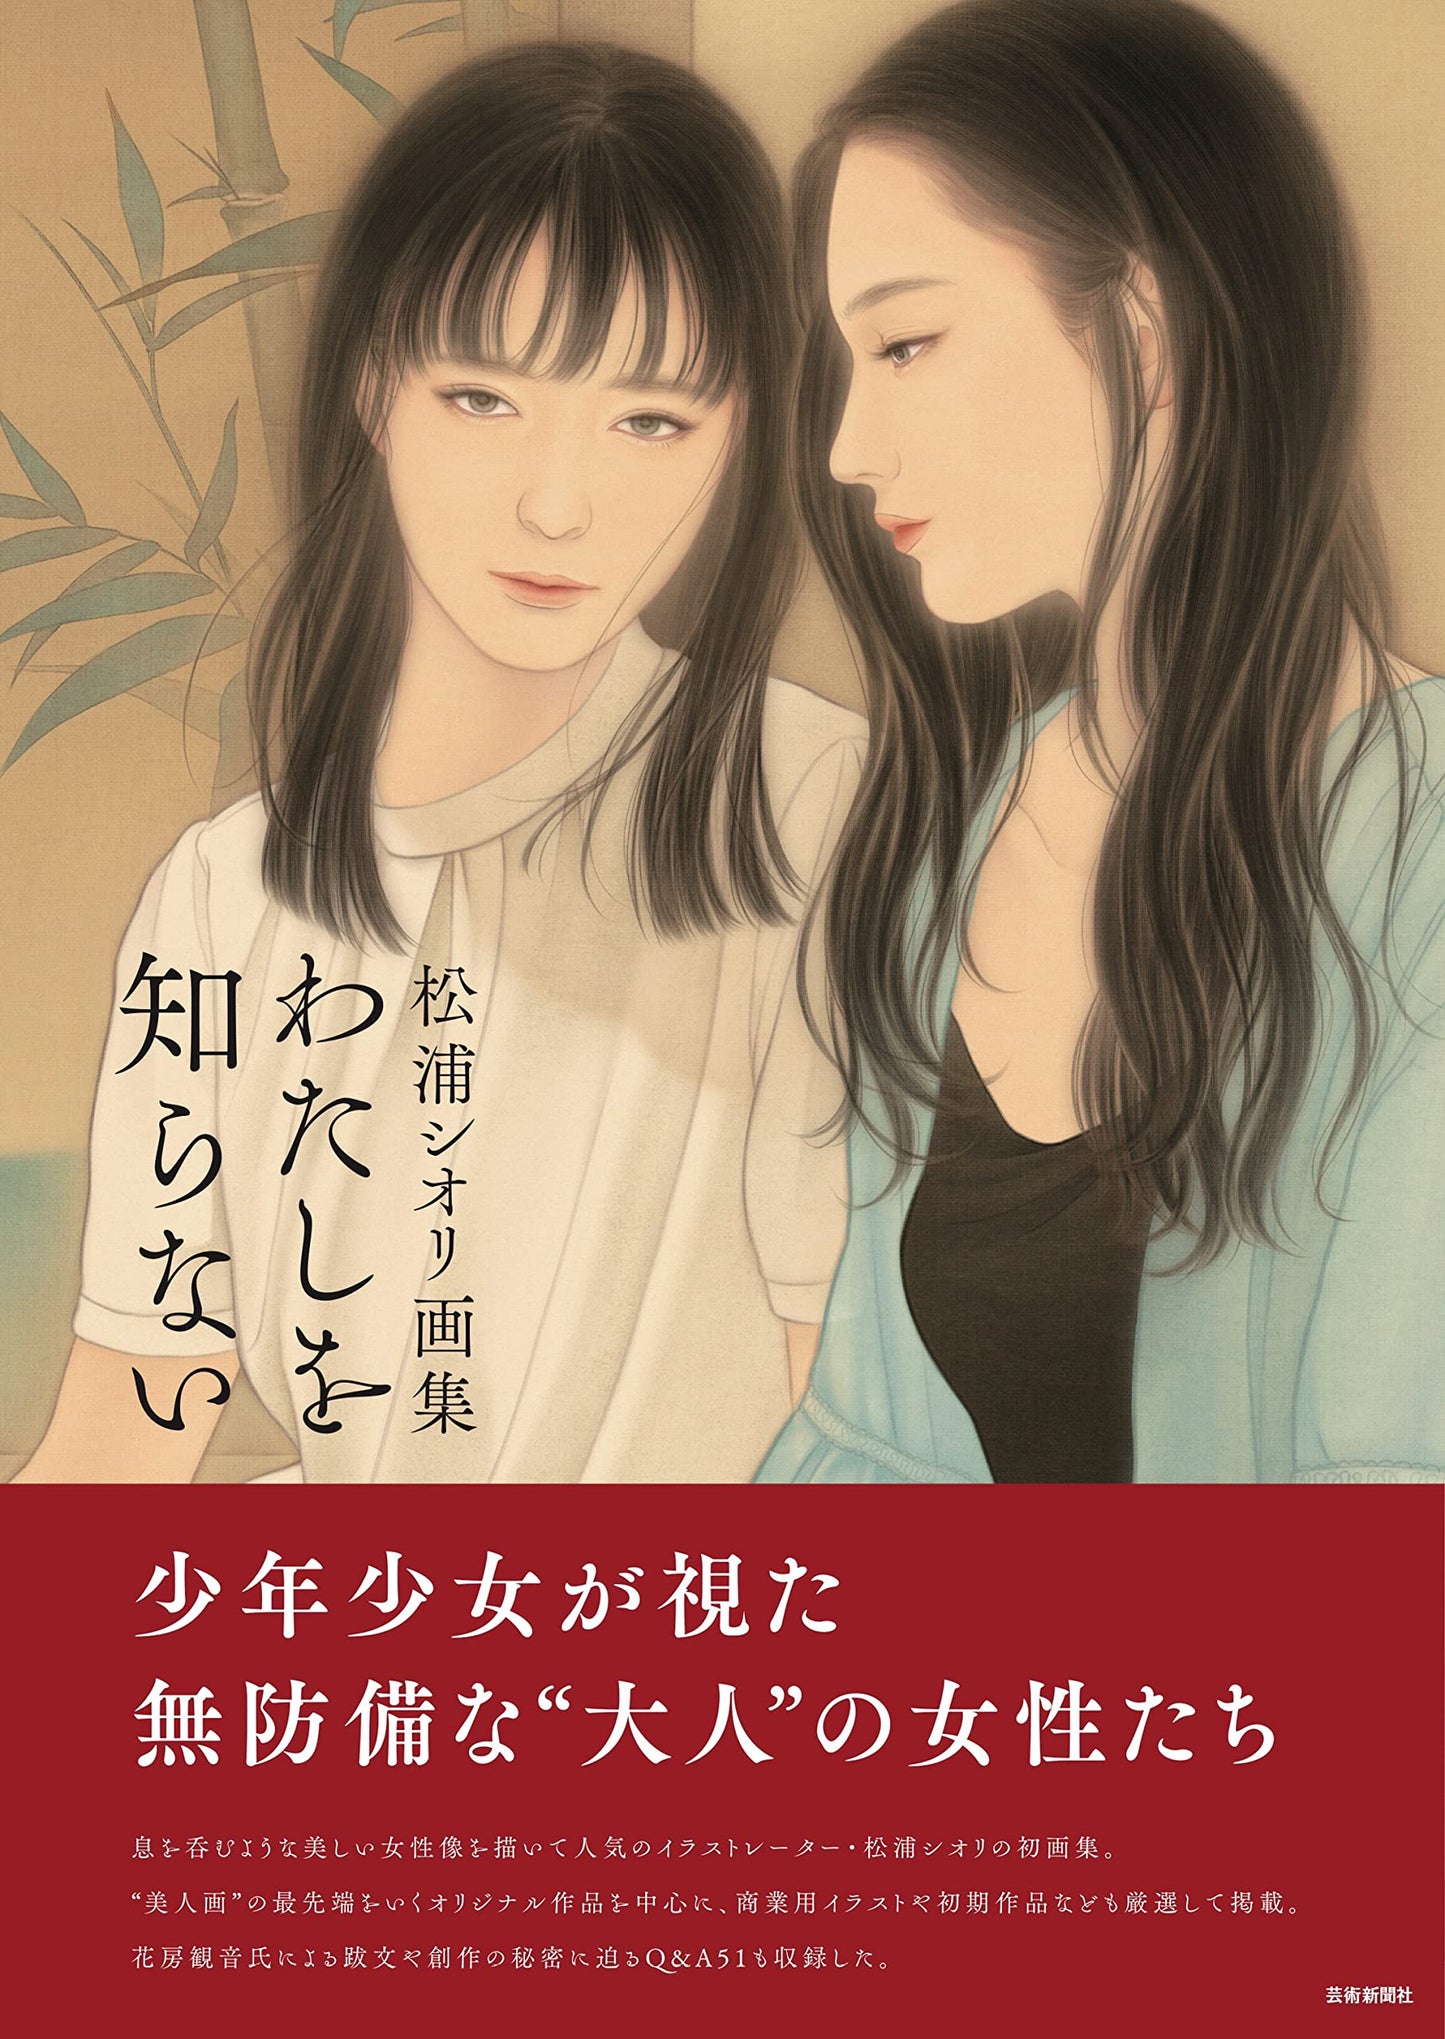 Shiori Matsuura Art book